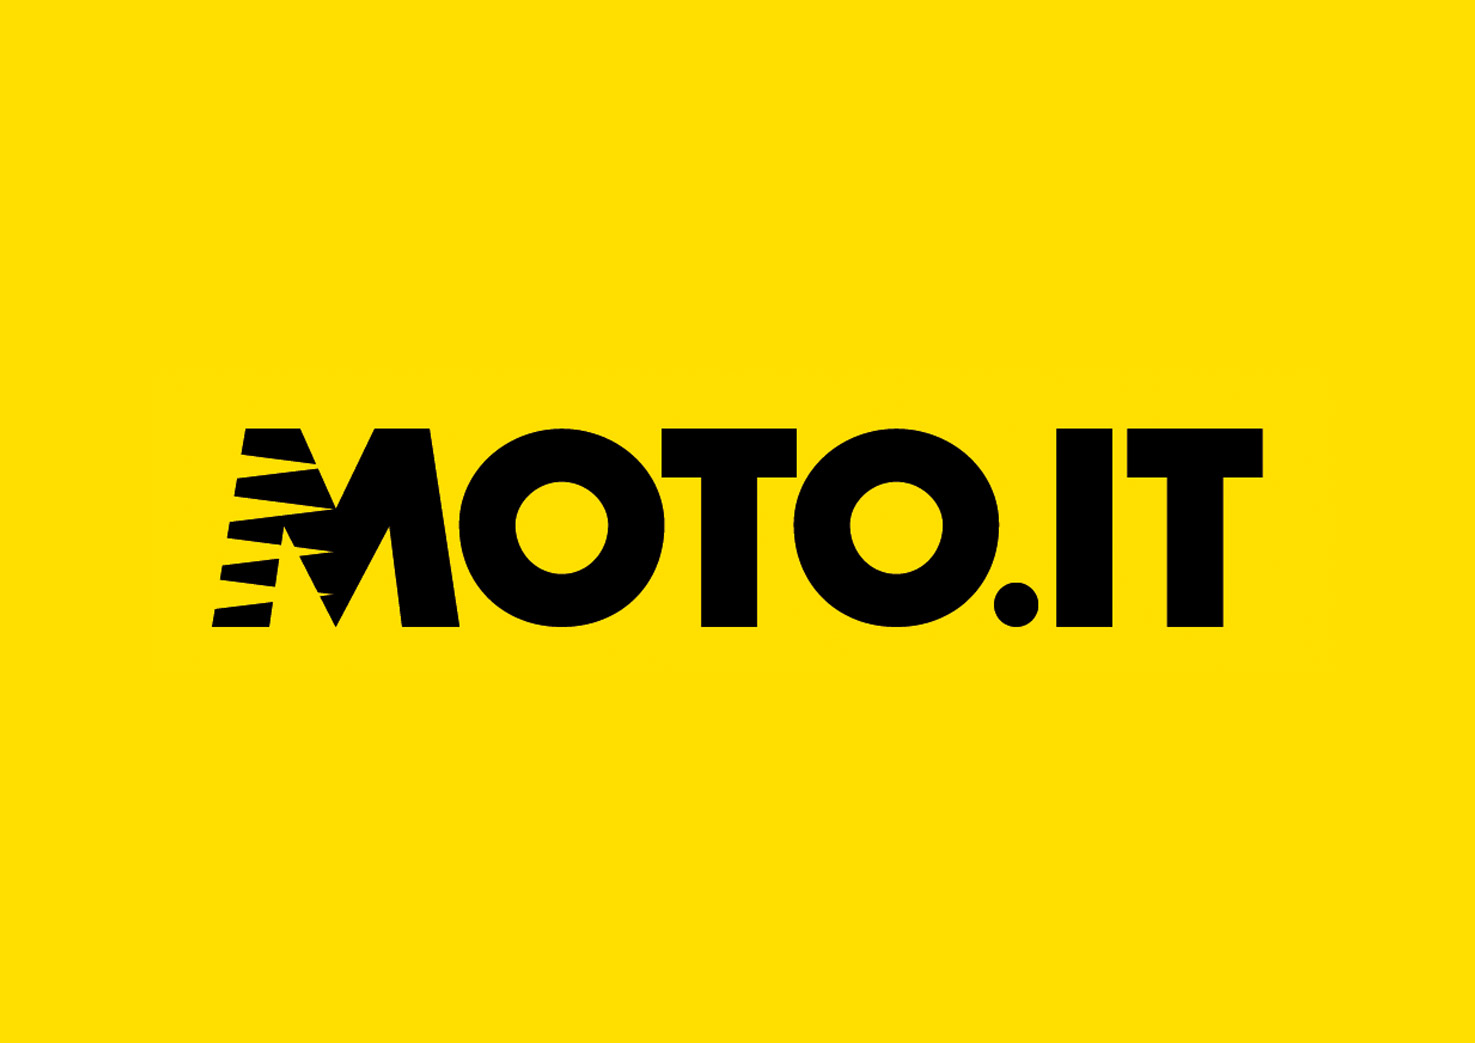 Moto.it